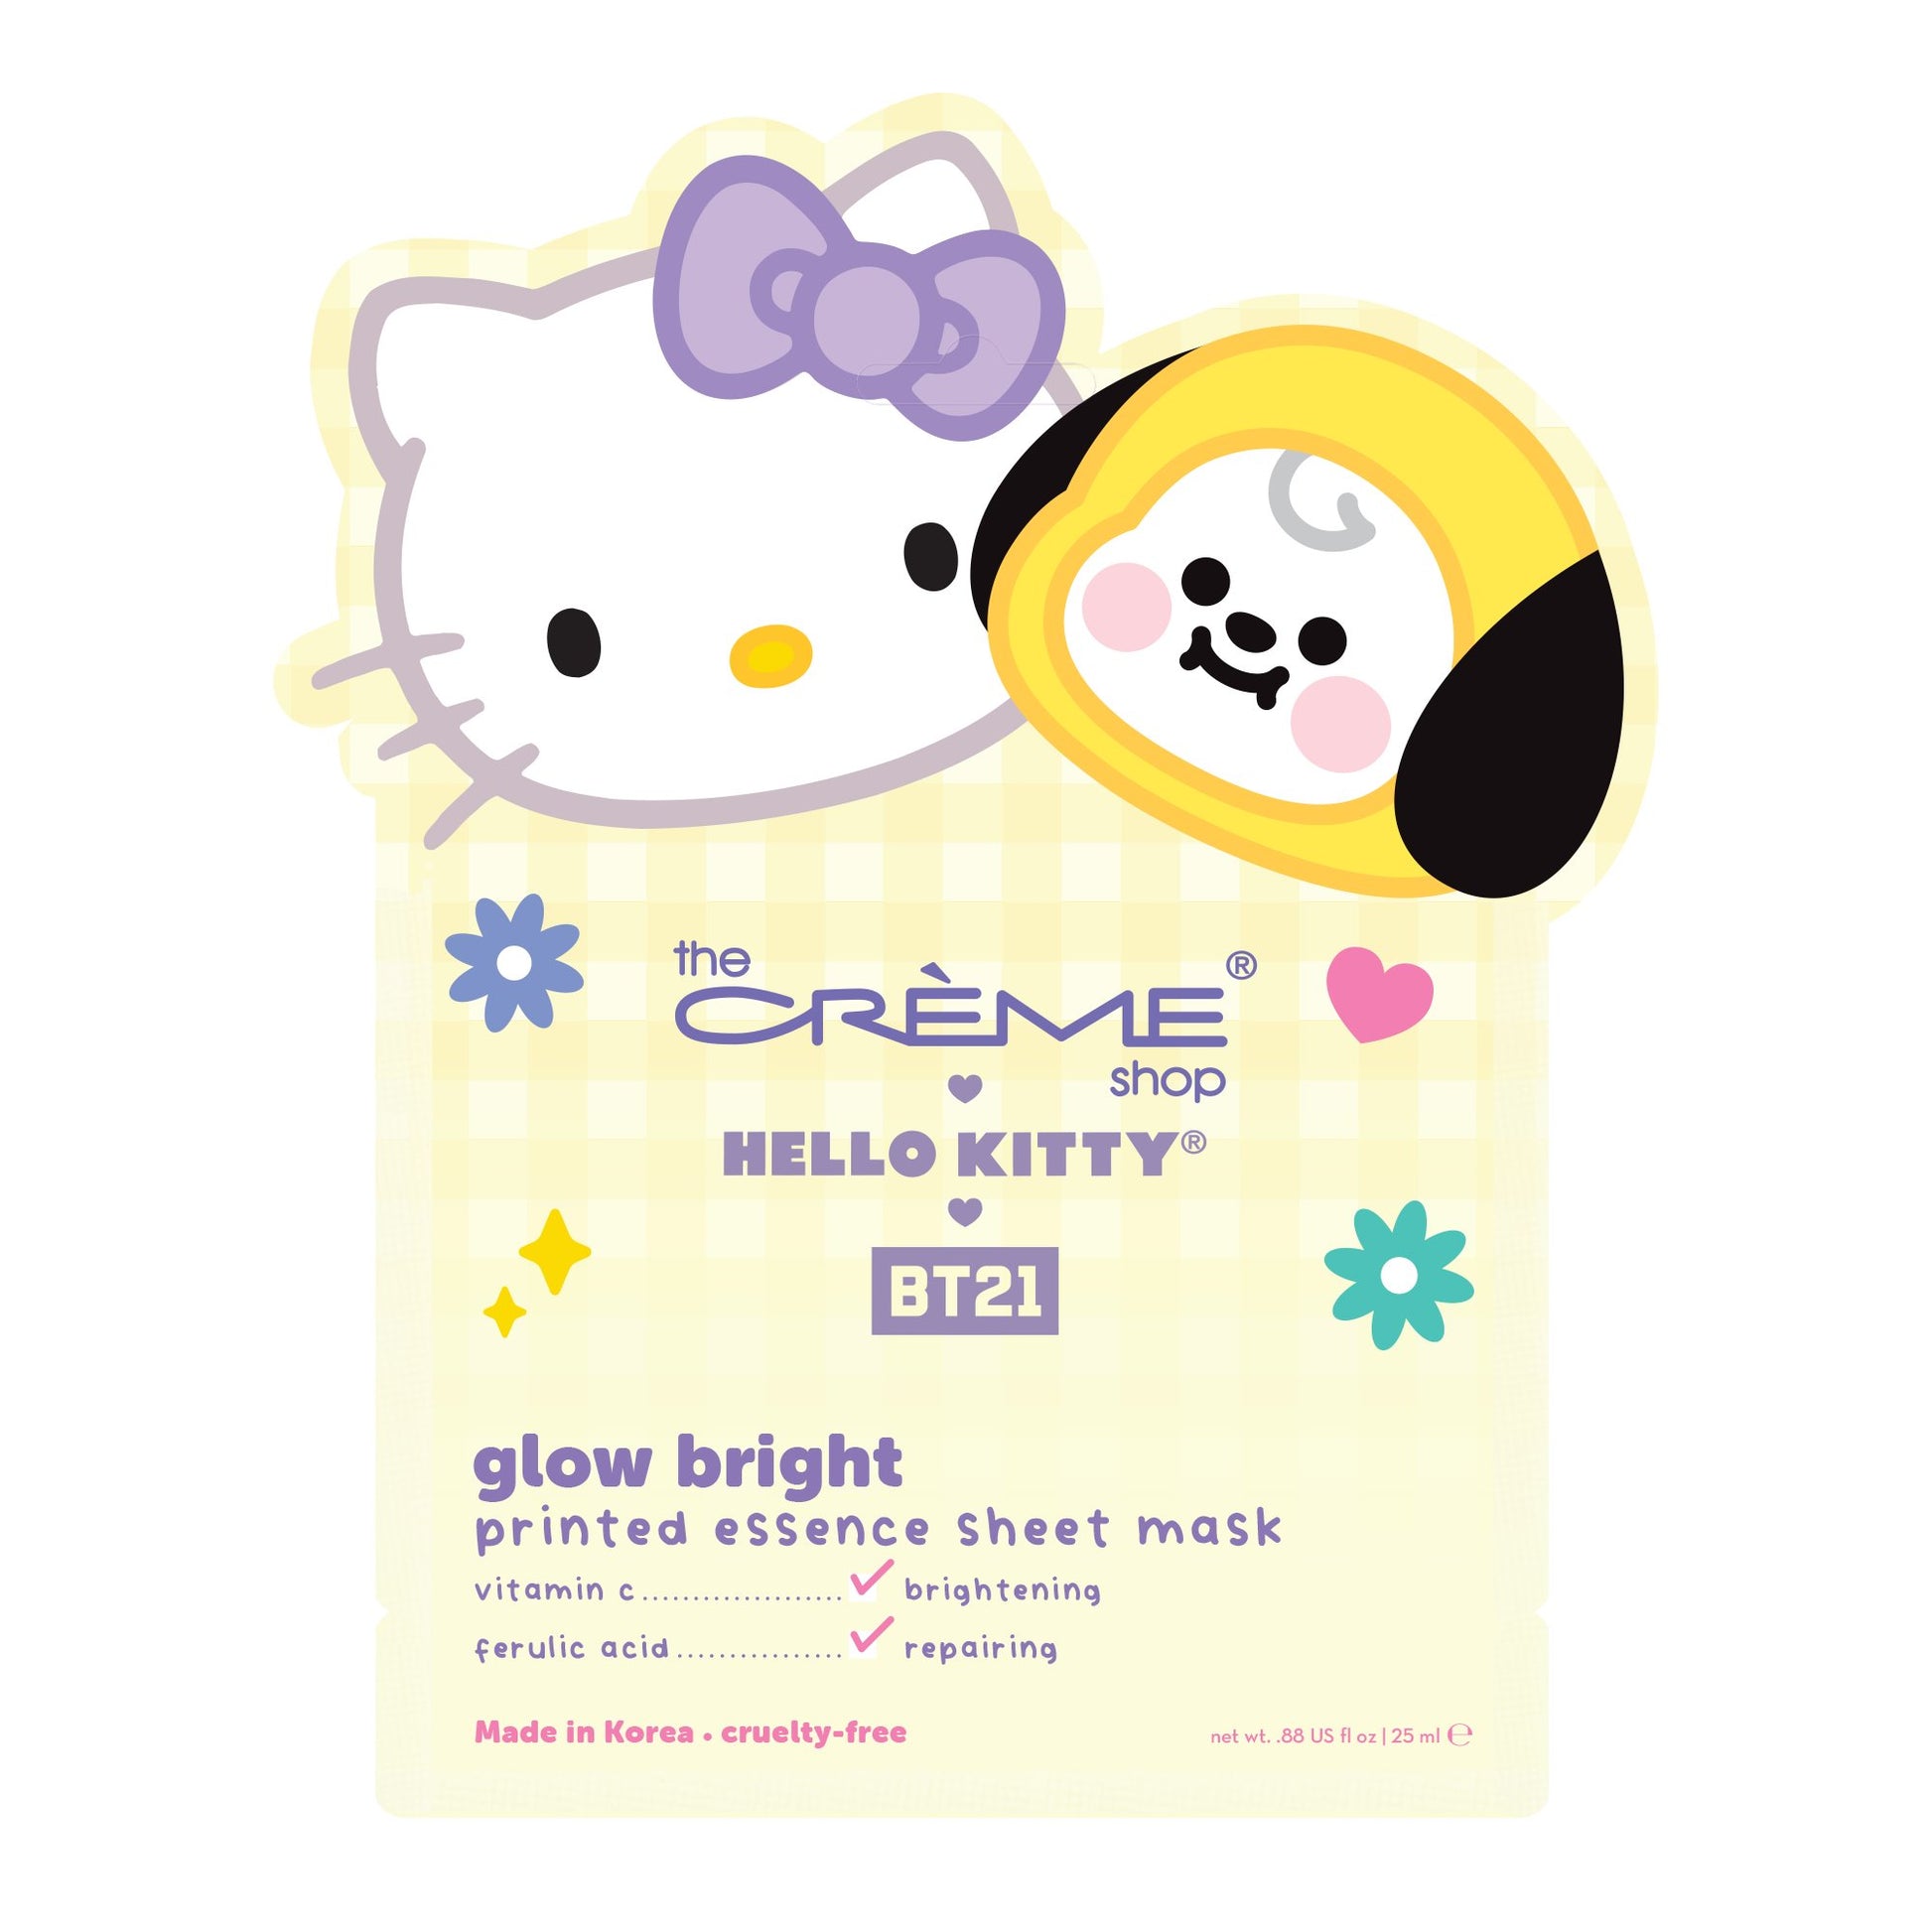 Single Hello Kitty & BT21 Glow Bright Printed Essence Sheet Mask Animated Sheet Mask, $4